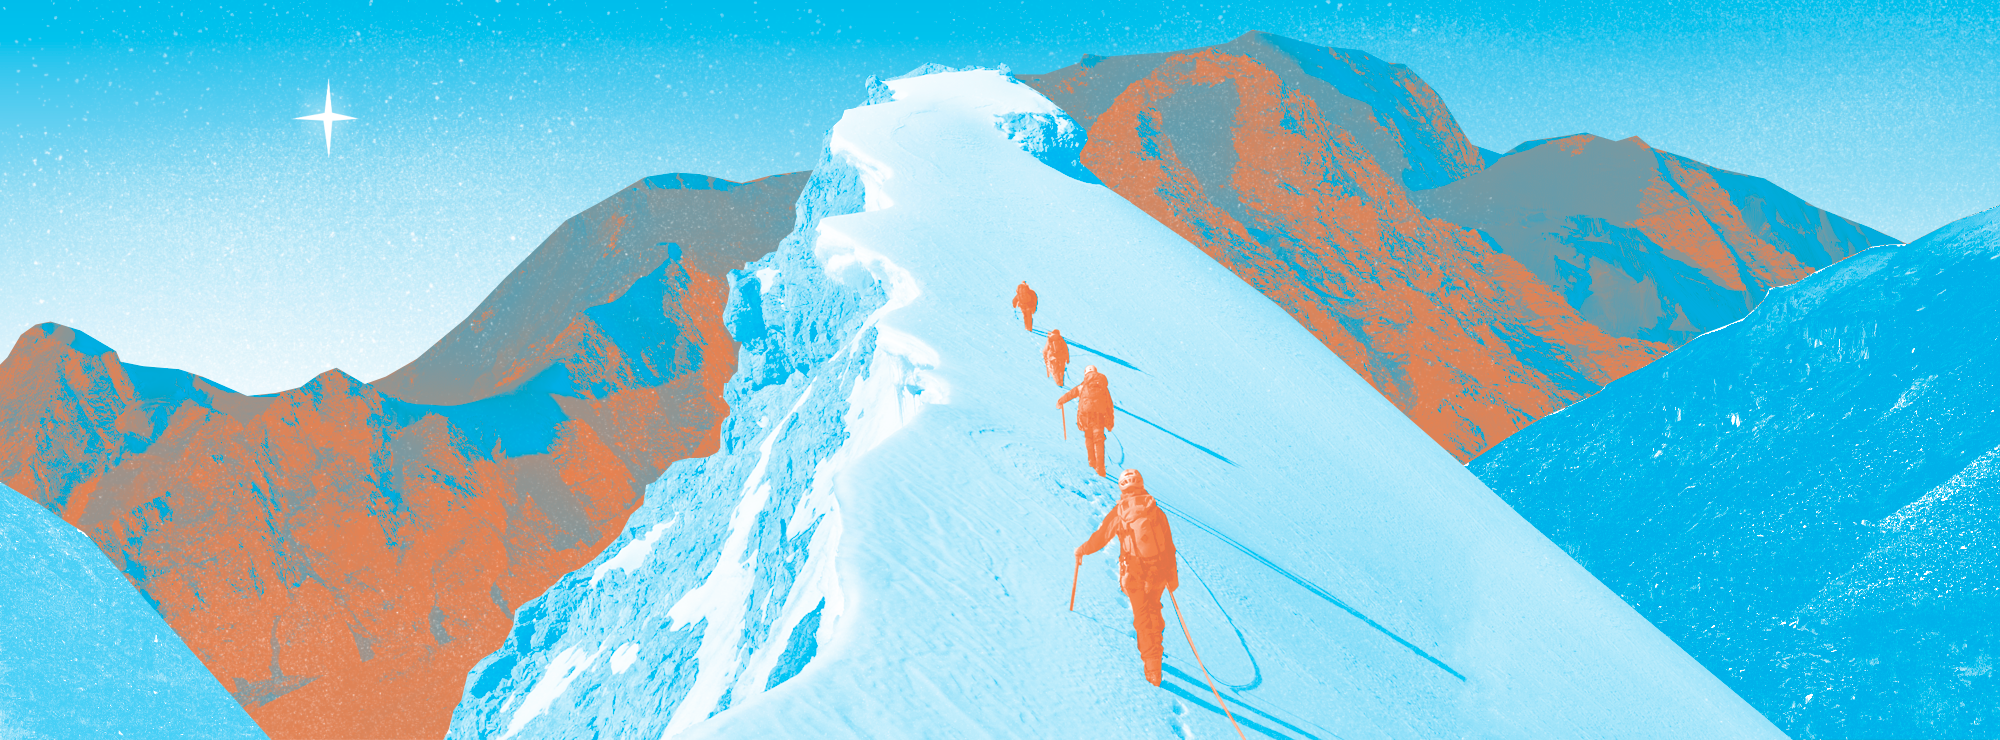 Полноразмерная обложка поста на тему: Как правильно начать заниматься альпинизмом